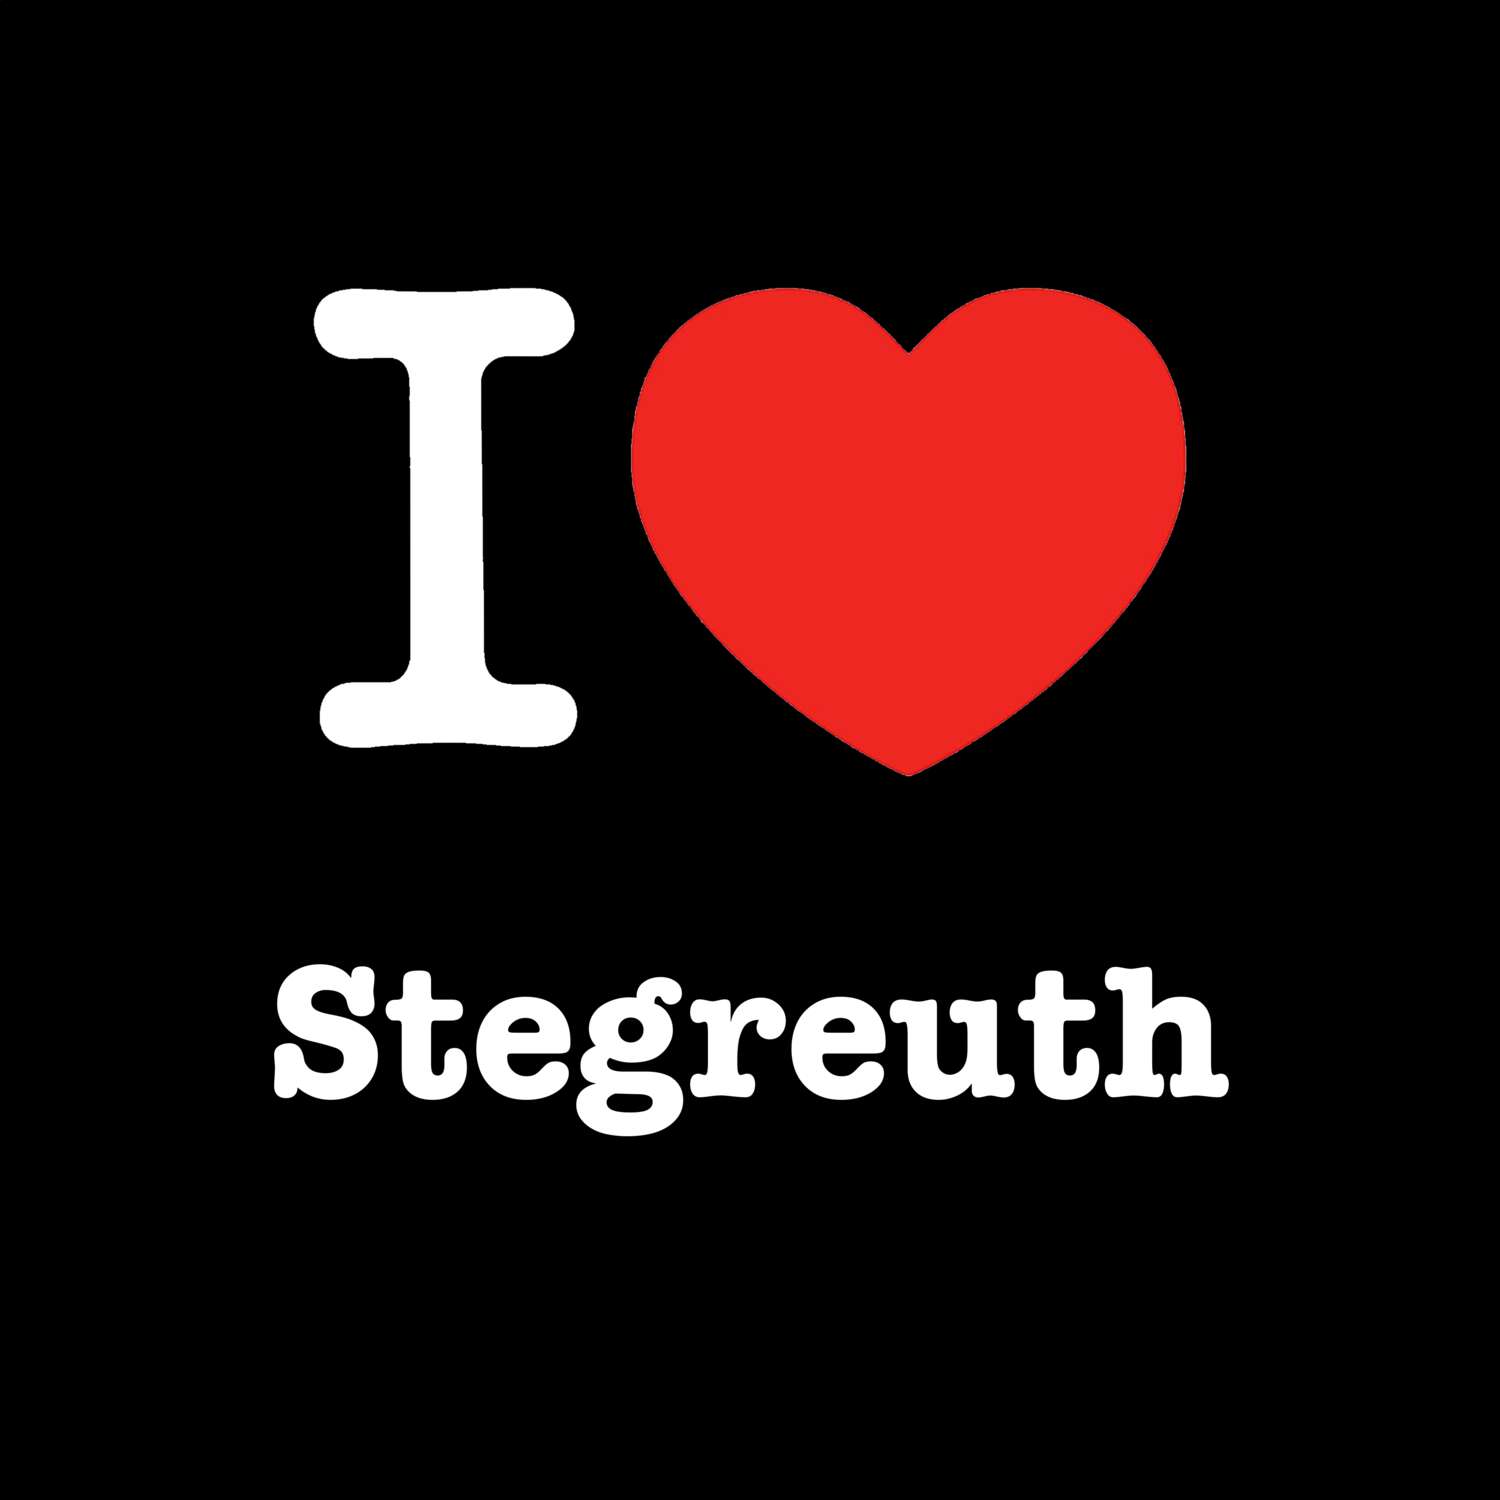 Stegreuth T-Shirt »I love«